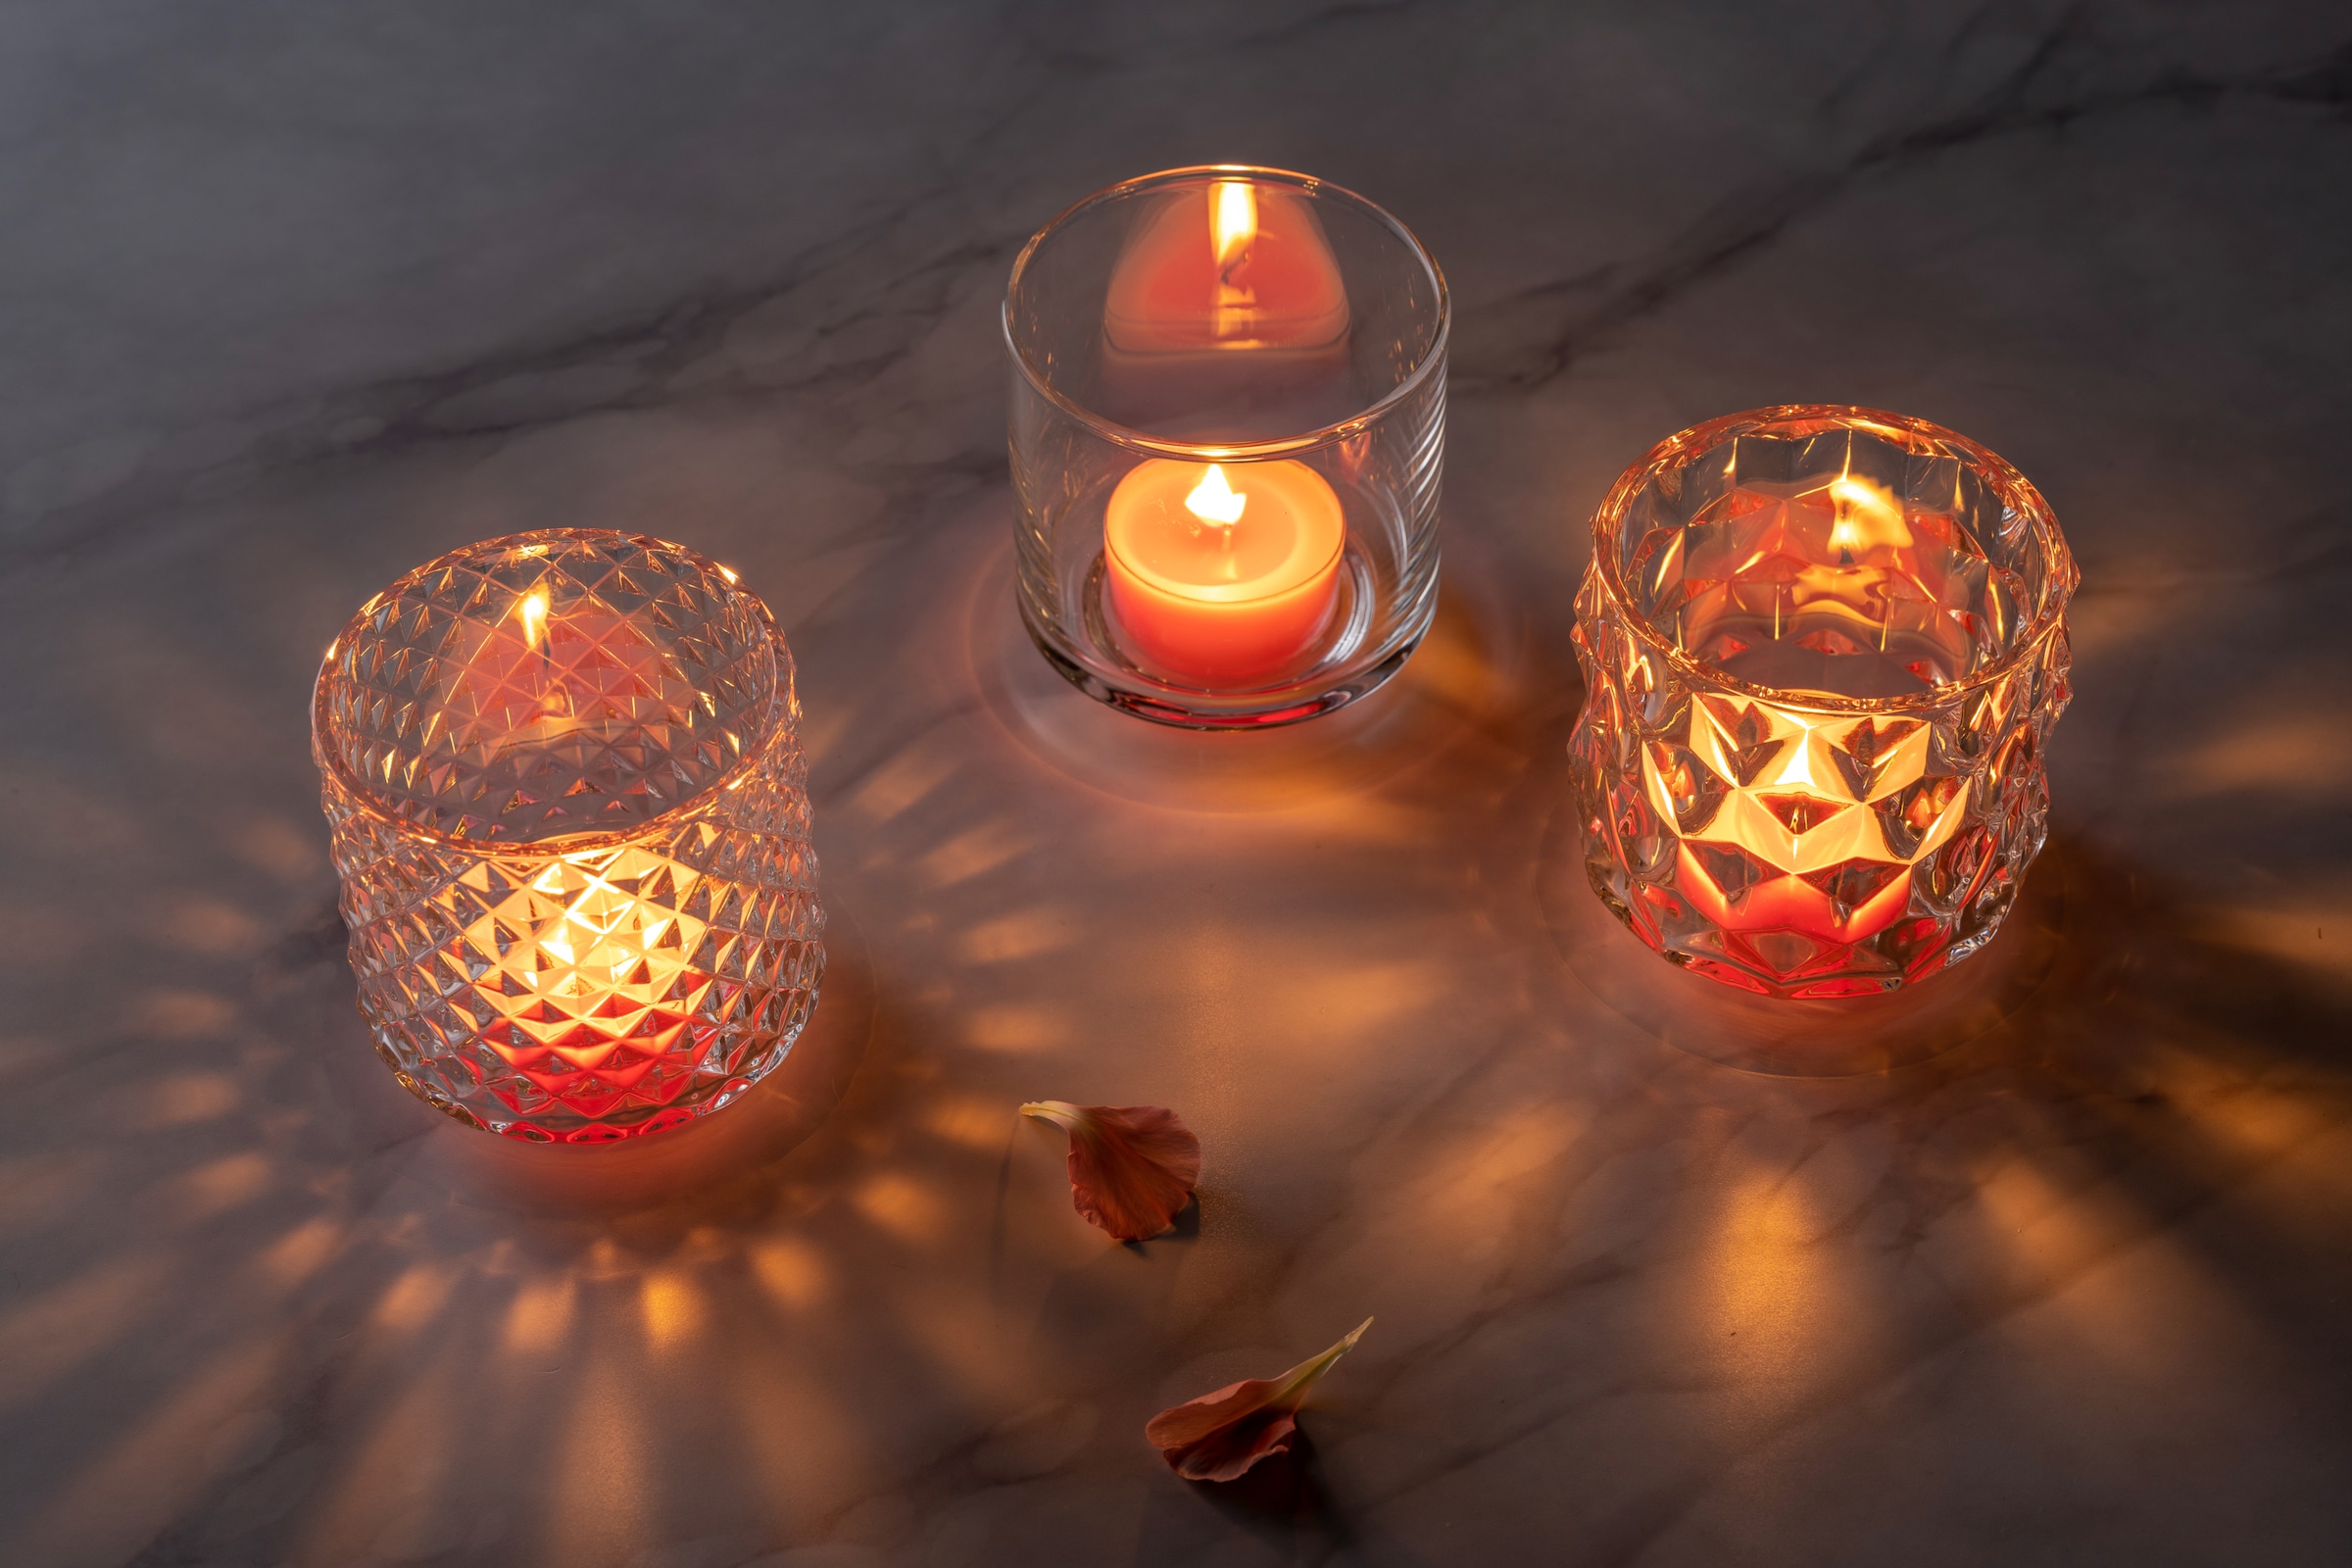 LEONARDO Teelichthalter »Tischlicht POESIA, mit großen Rauten, Kerzenhalter«, (Set, 4 St.), aus Glas, Höhe ca. 10 cm, Spülmaschinengeeignet